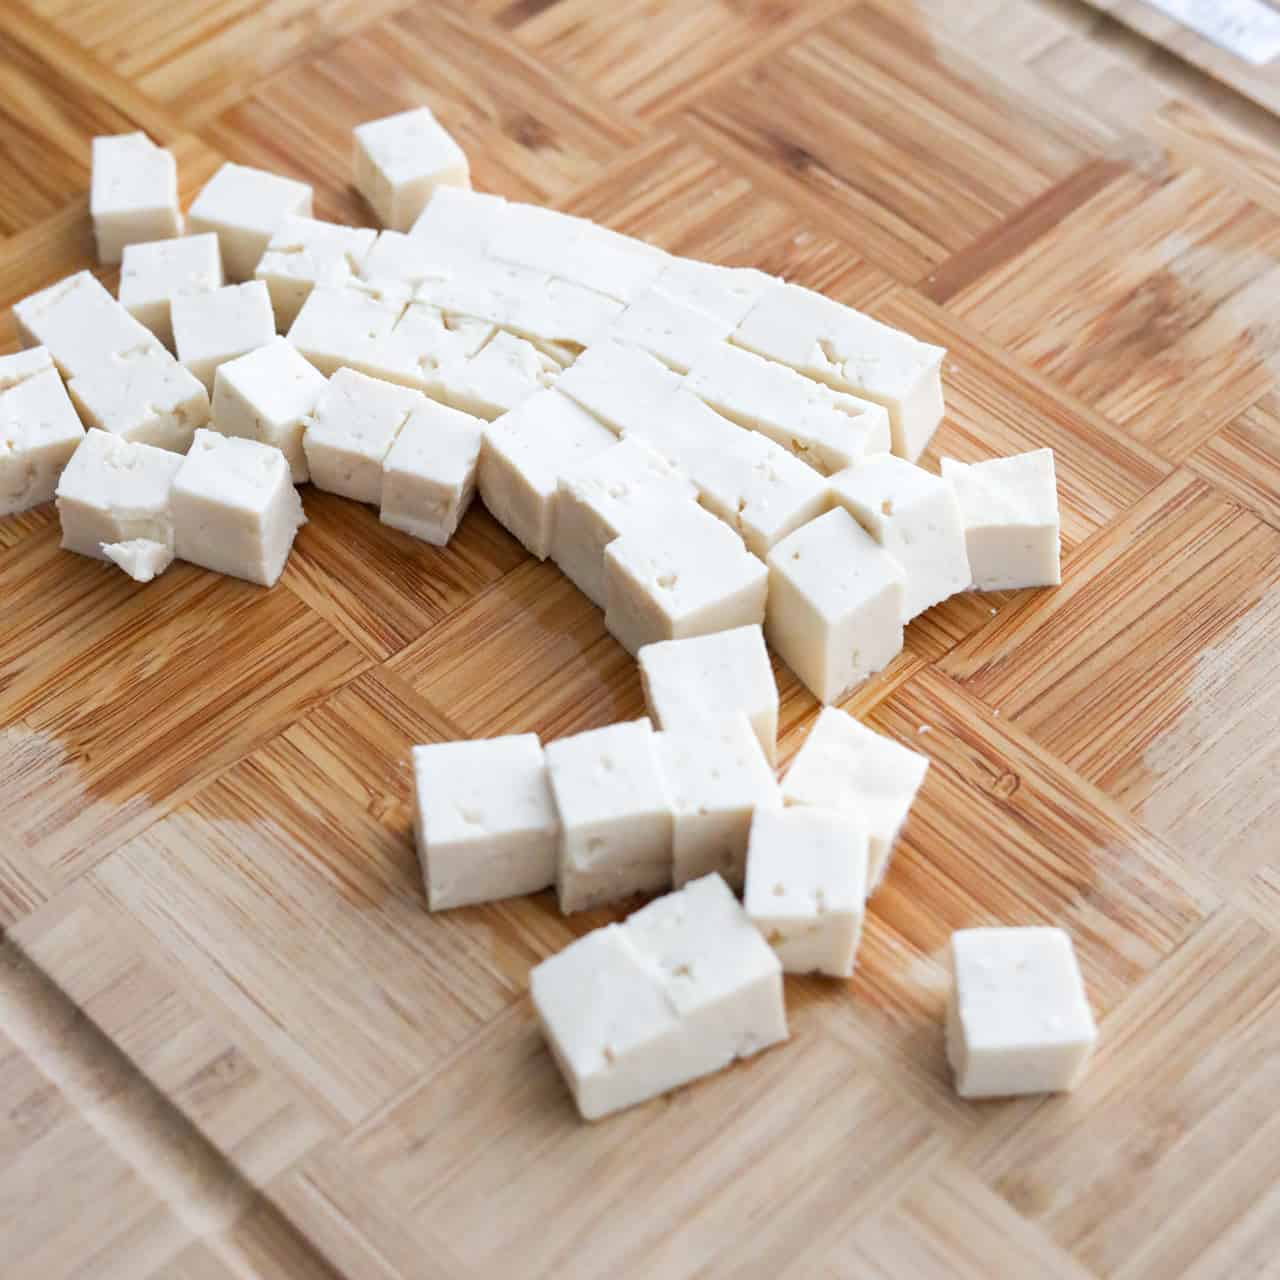 Prepare Tofu